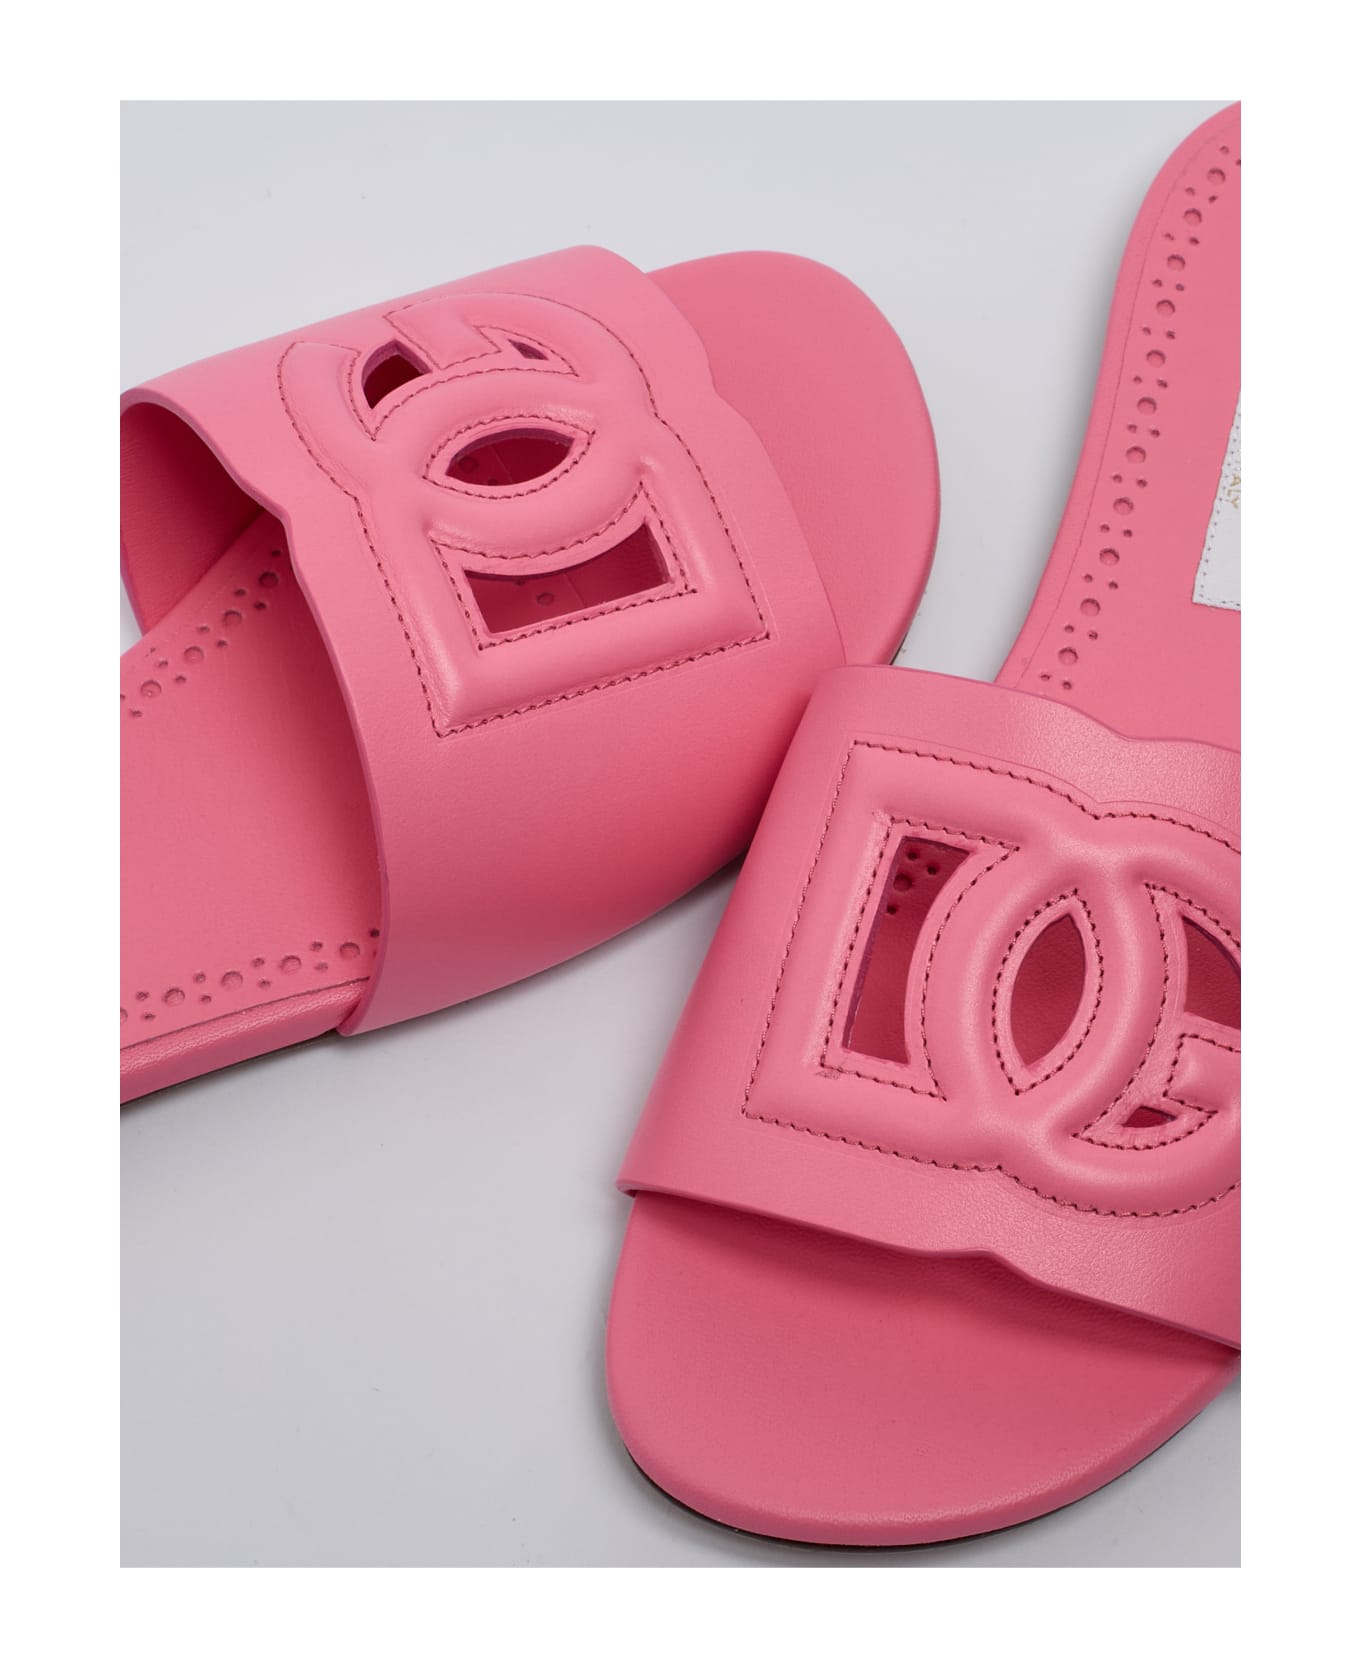 Dolce & Gabbana Slides Sandal - ROSA シューズ